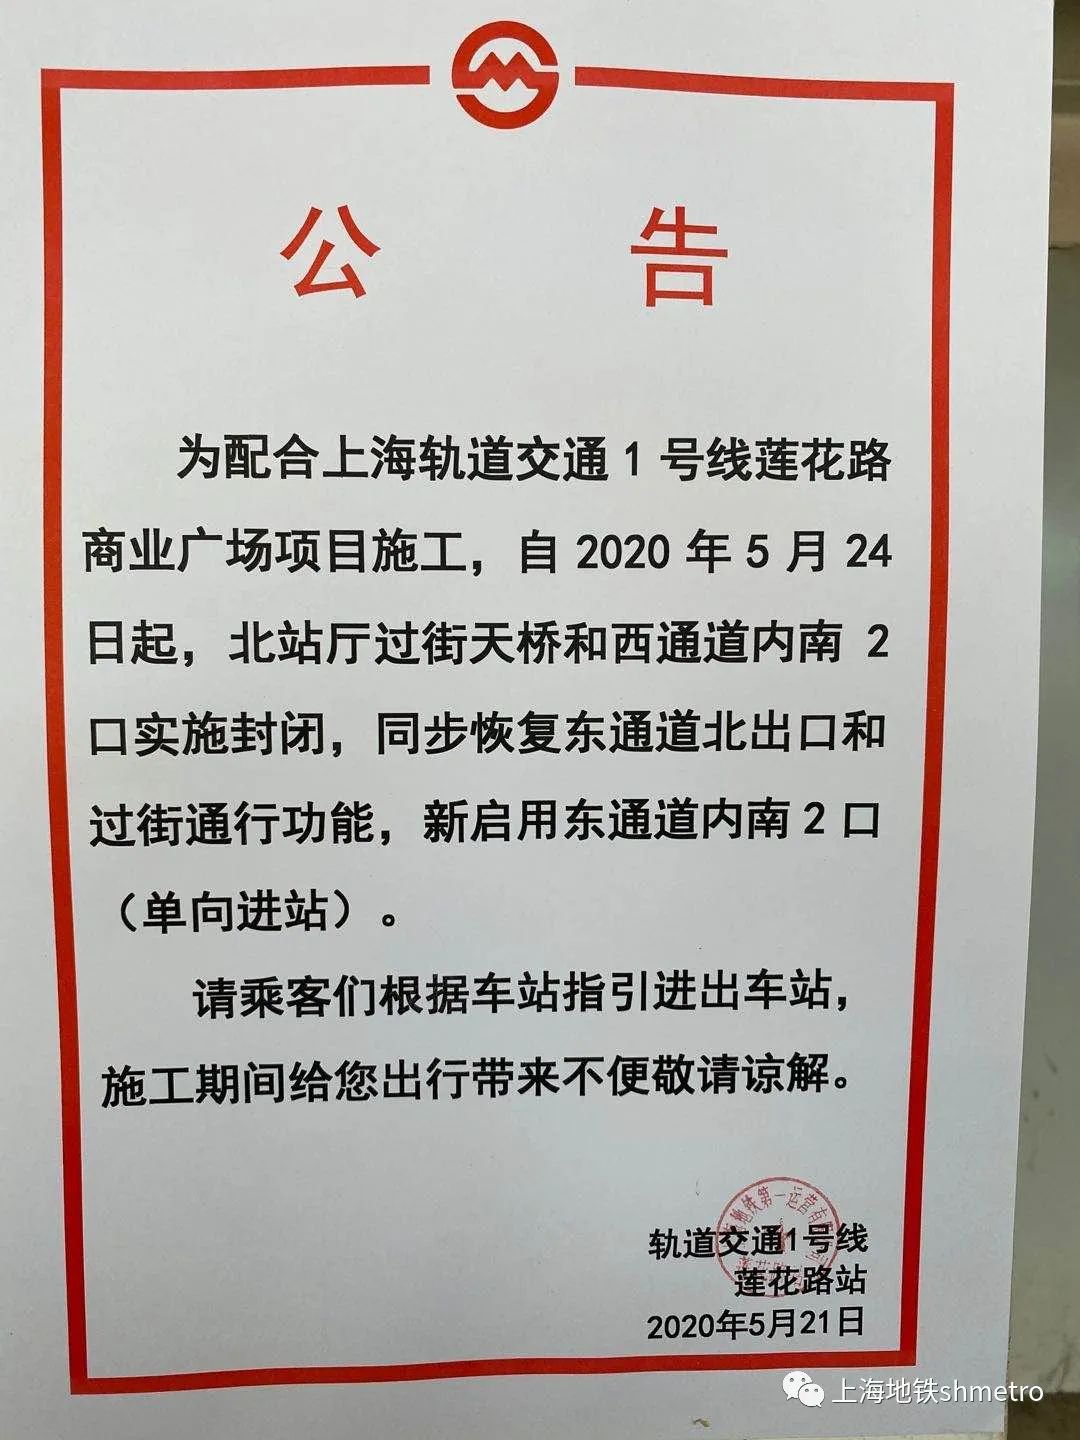 上海地铁1号线莲花路站出入口调整 过街天桥关闭